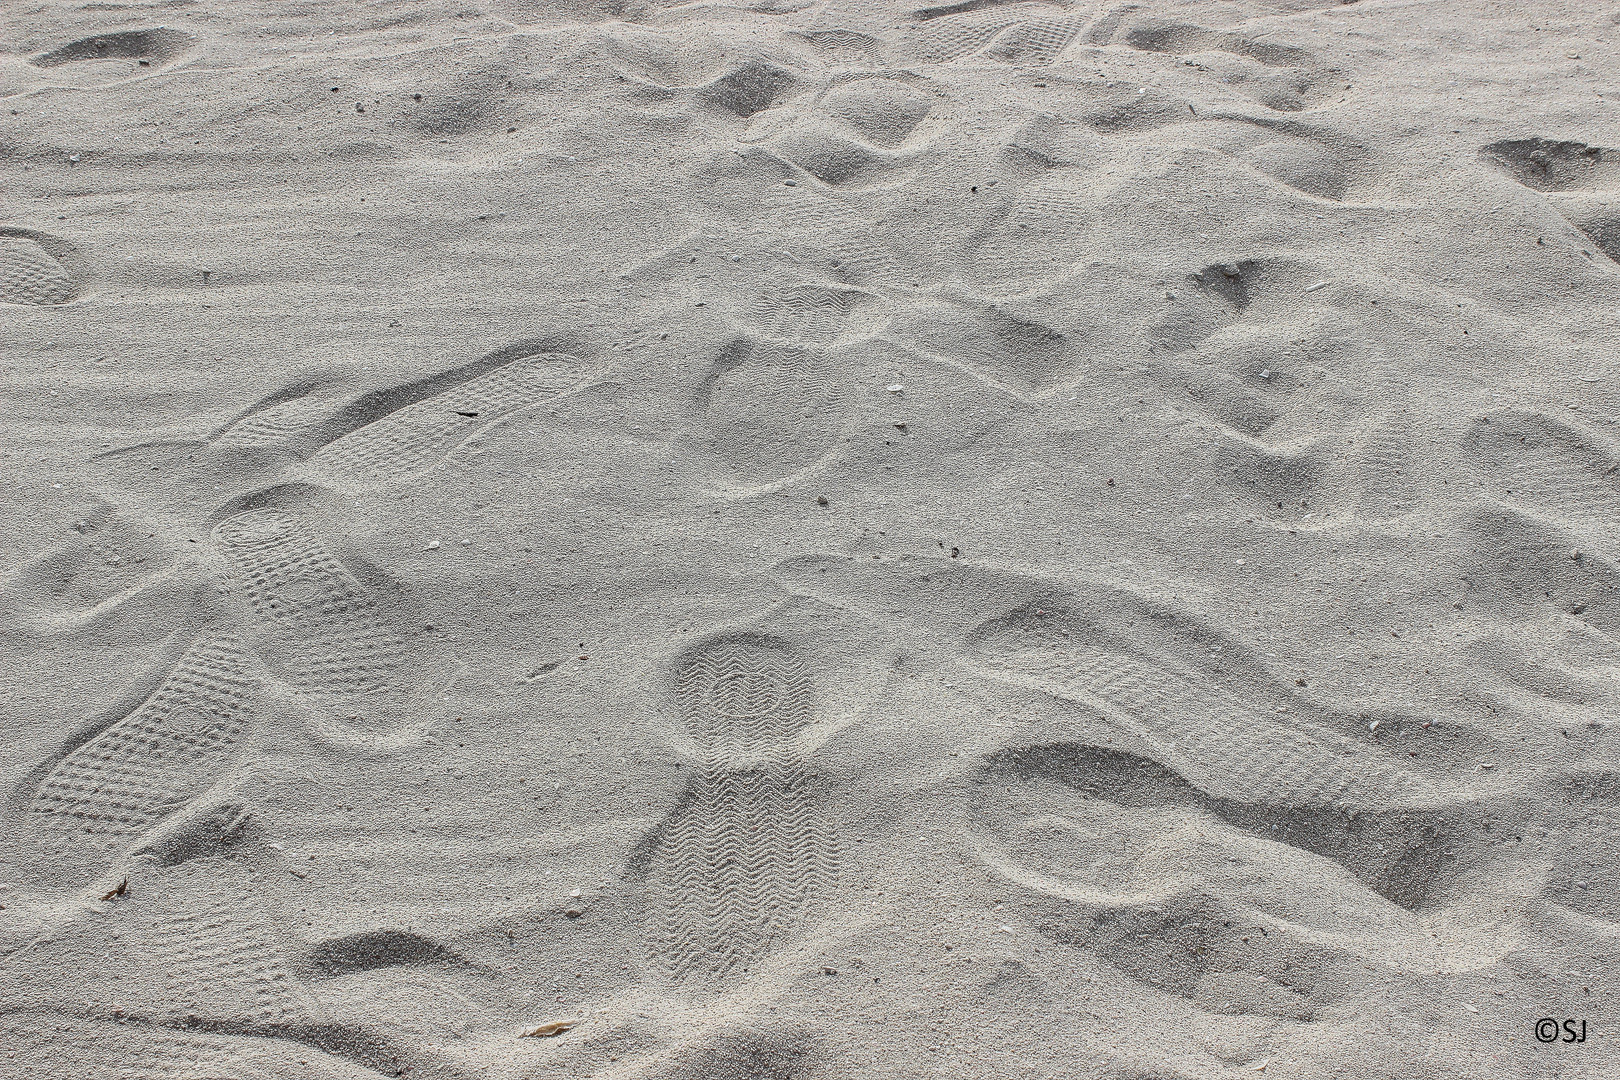 Sand@Beach